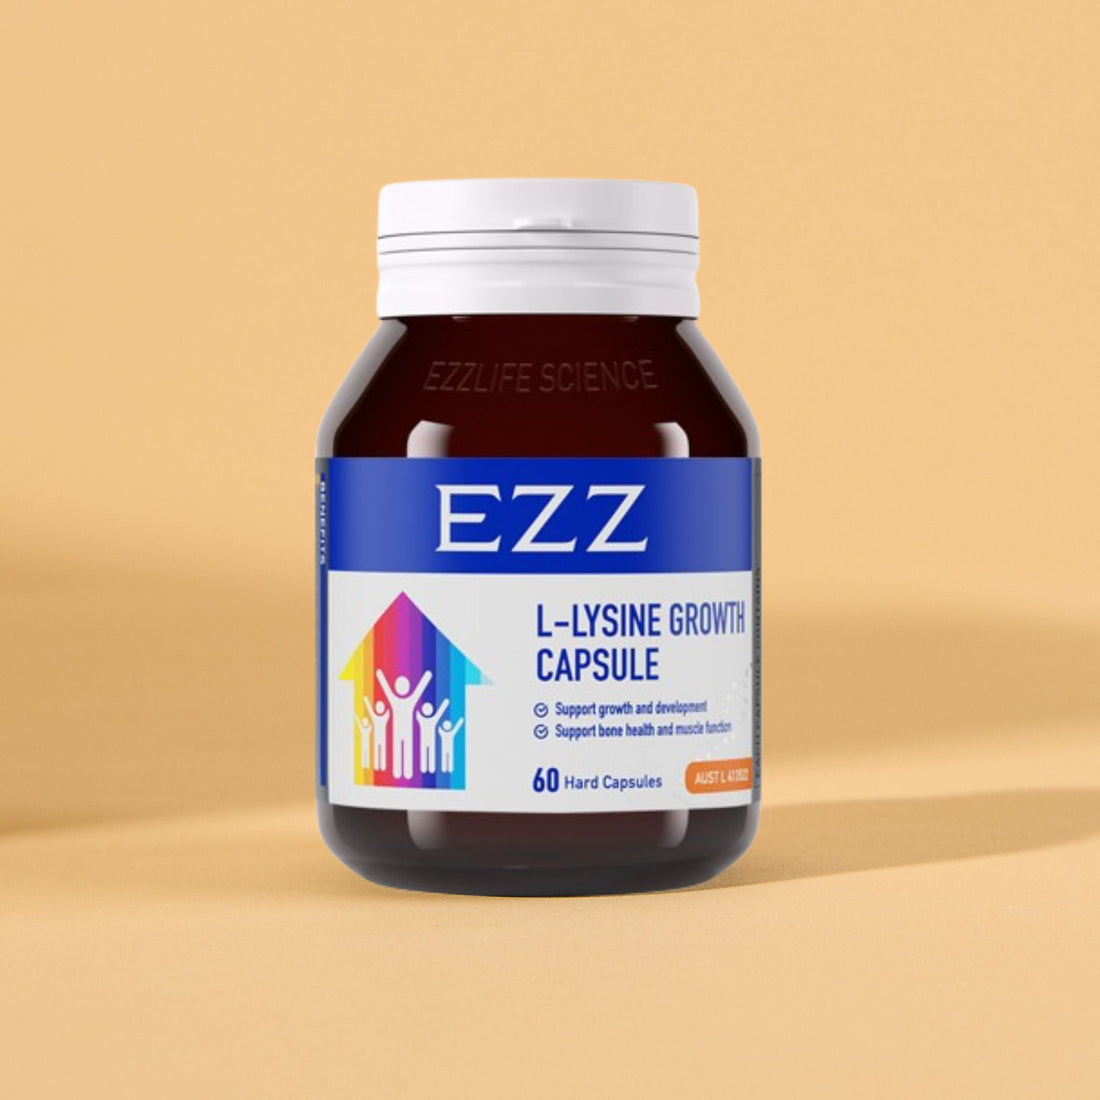 EZZ L-Lysine Growth Capsule 2.0 - EZZ OFFICIAL